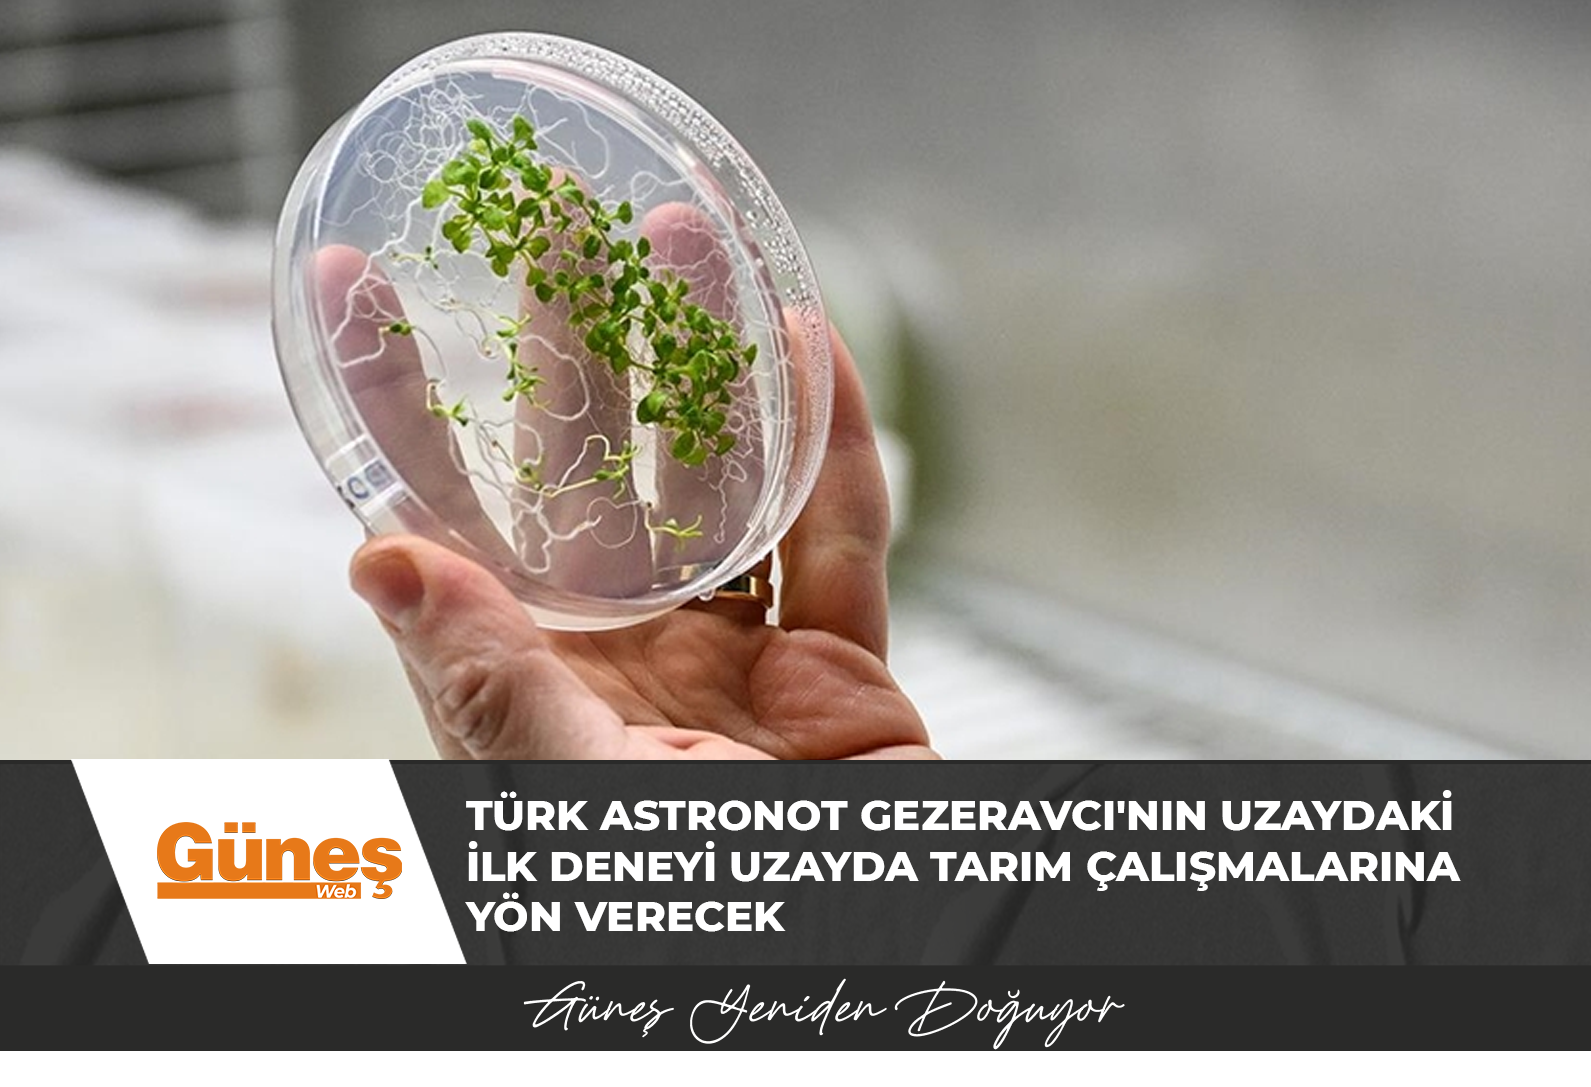 Türk astronot Gezeravcı’nın uzaydaki ilk deneyi uzayda tarım çalışmalarına yön verecek